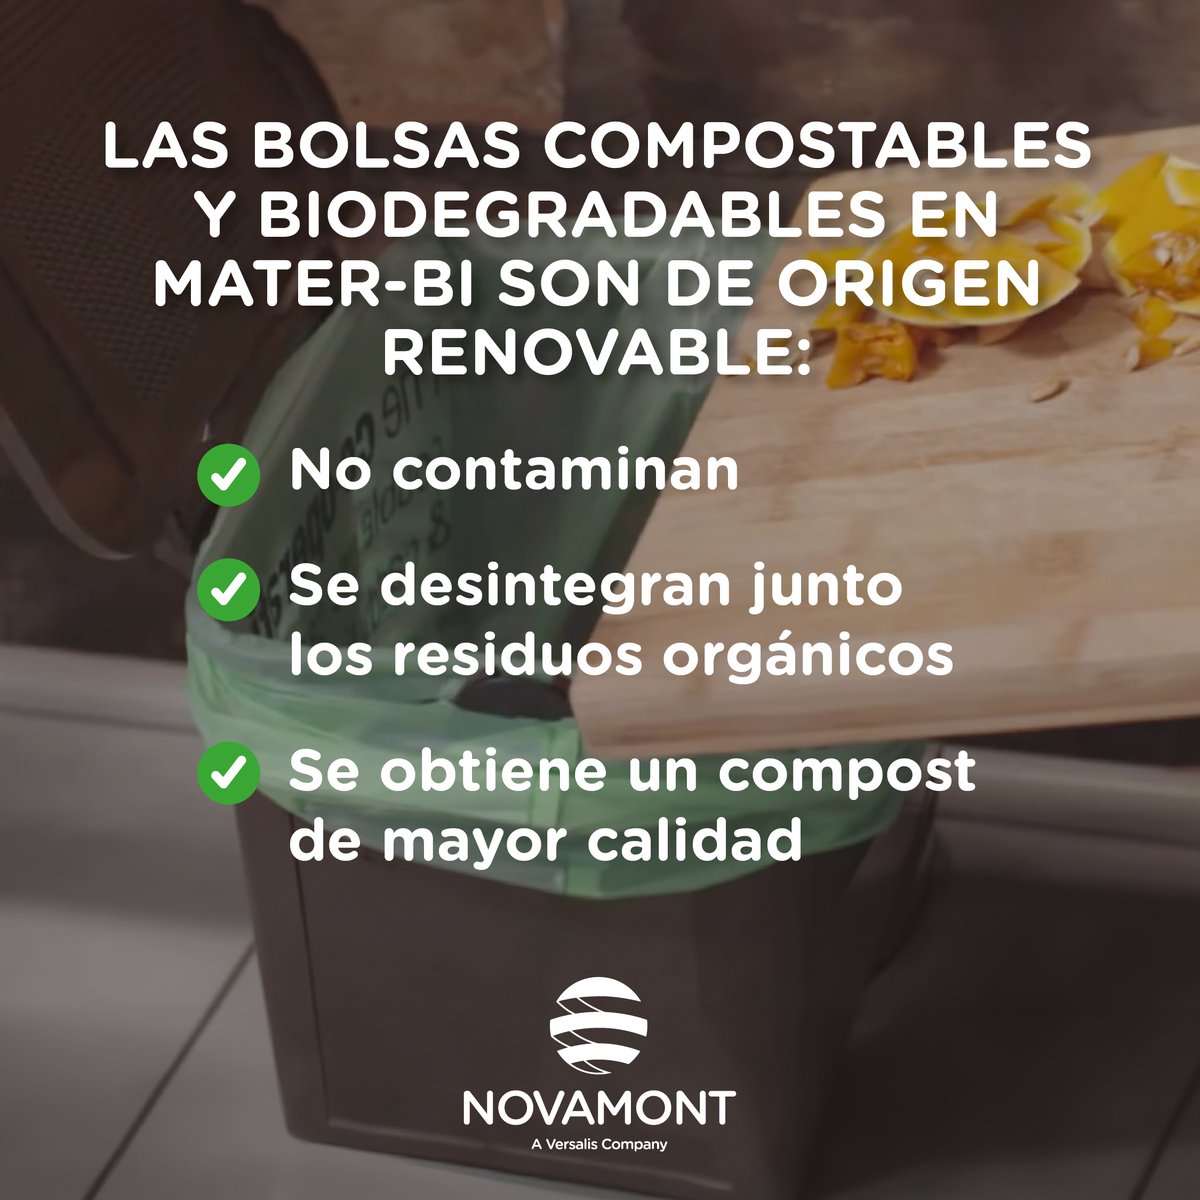 Las bolsas #compostables y #biodegradables en #MaterBi, gracias a su origen renovable, mejoran la gestión de los #biorresiduos domésticos y de restauración, no contaminan, se desintegran junto los residuos orgánicos y se obtiene un #compost de mayor calidad. Te lo contamos